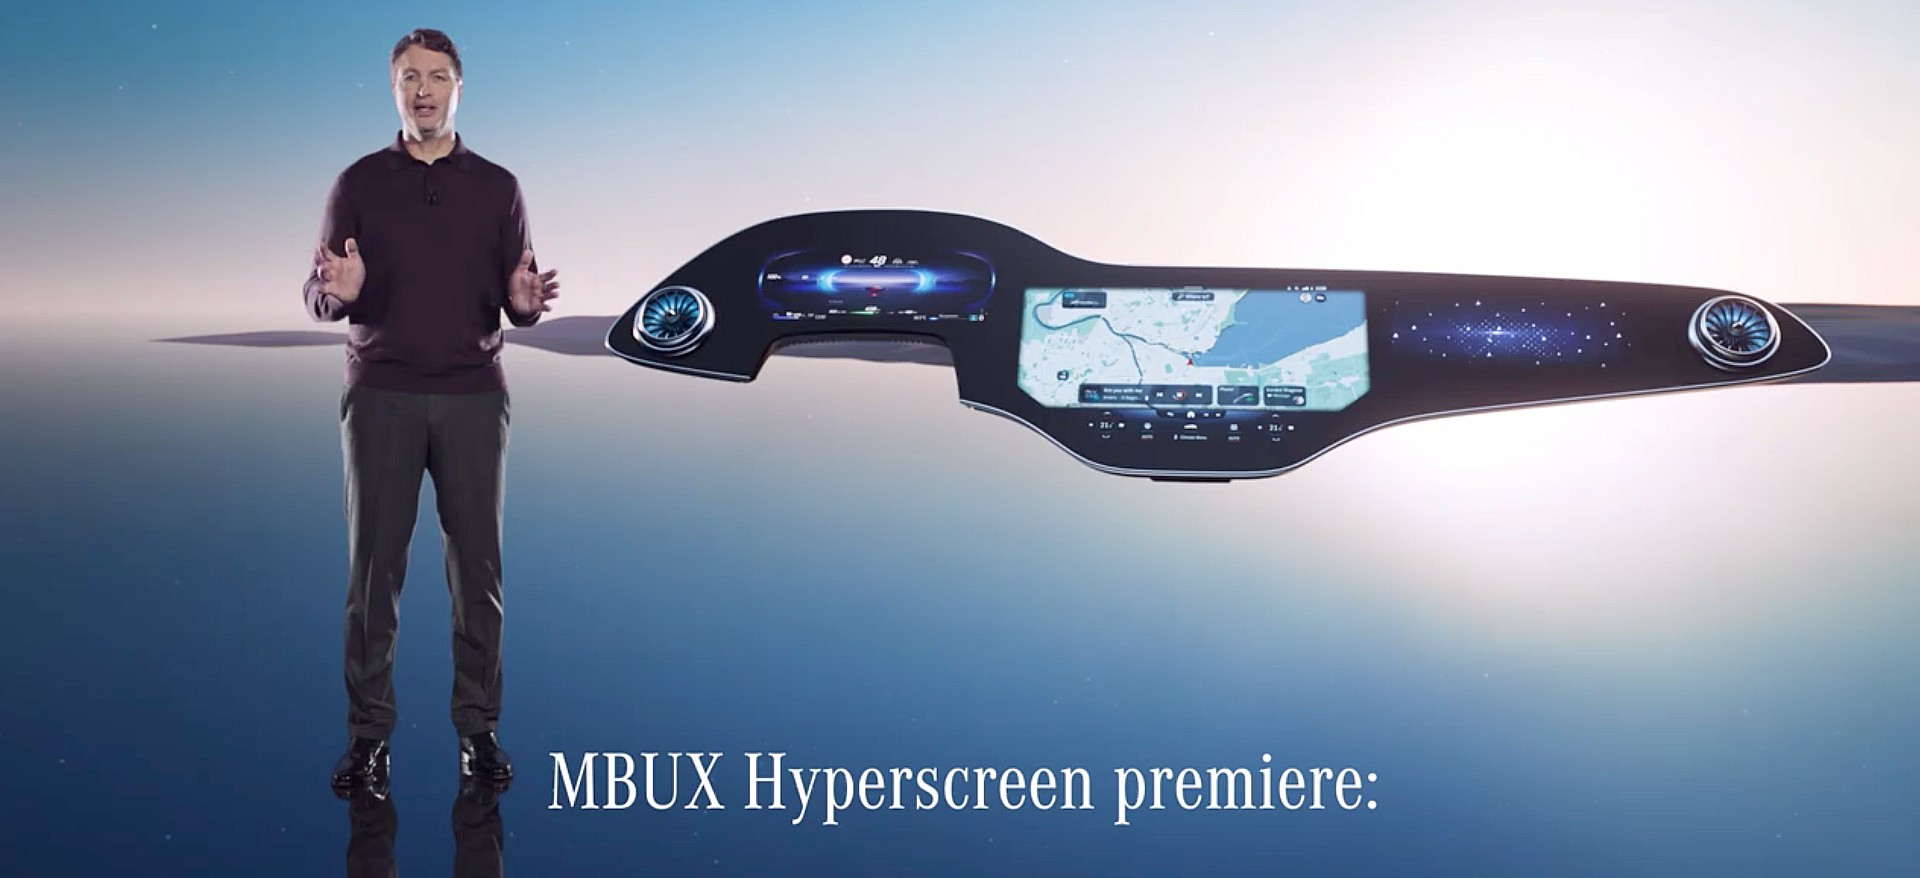 Mercedes стремится превзойти информационно-развлекательную систему Tesla с помощью «Hyperscreen» шириной 56 дюймов